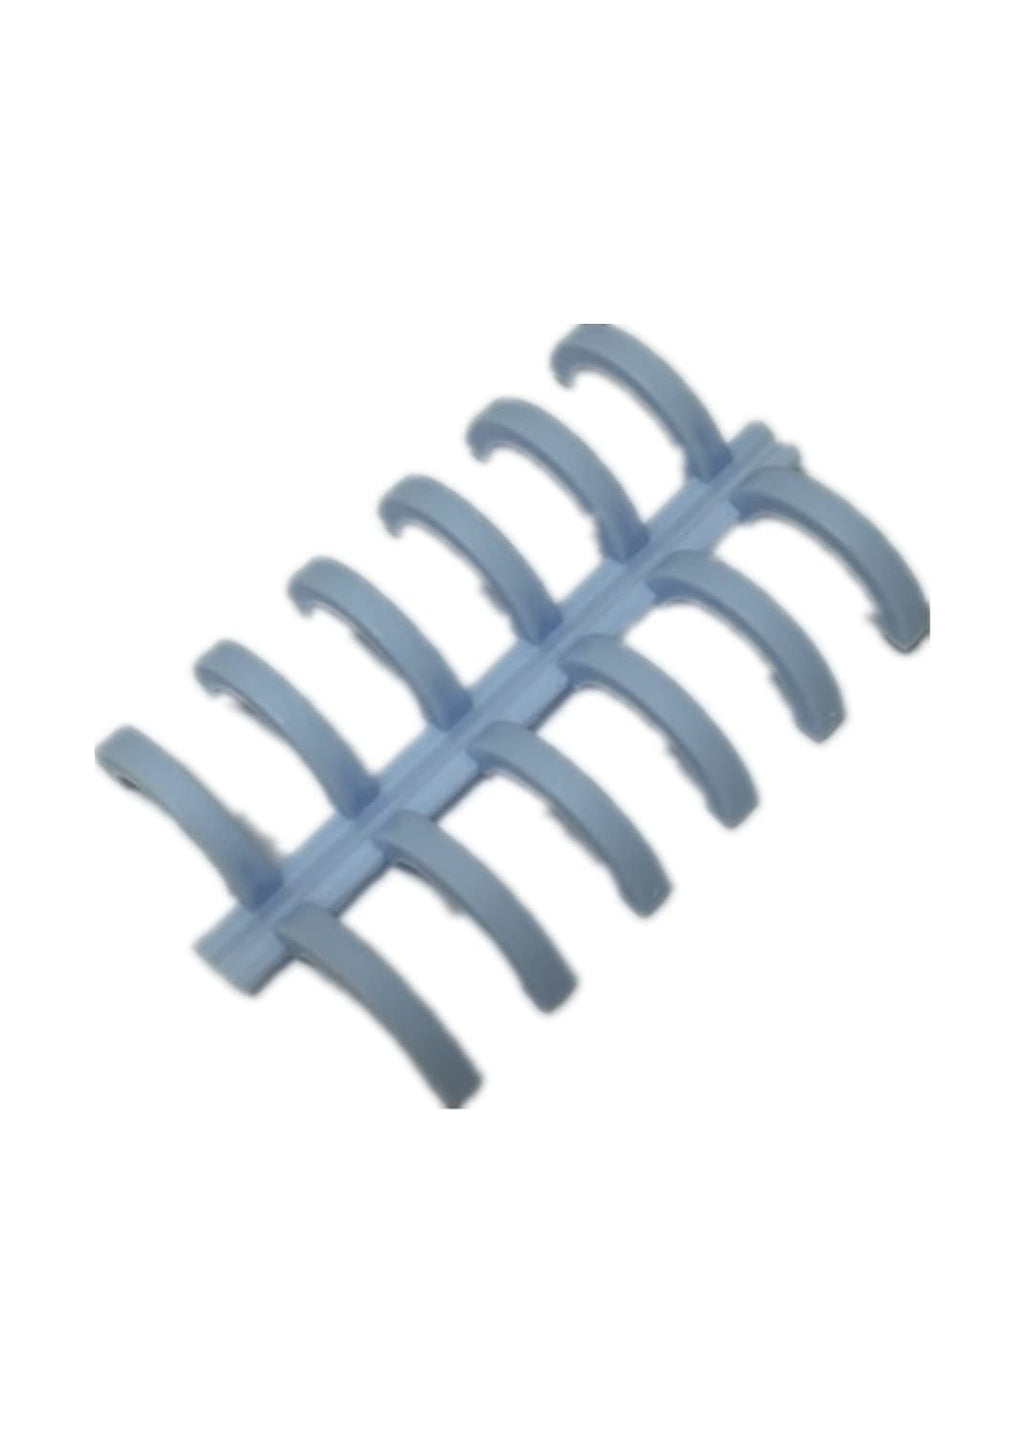 [Australia - AusPower] - Handbook Loose-Leaf Binding Buckle Removable Binding Ring Porous Binding Buckle KLBH14JDW 